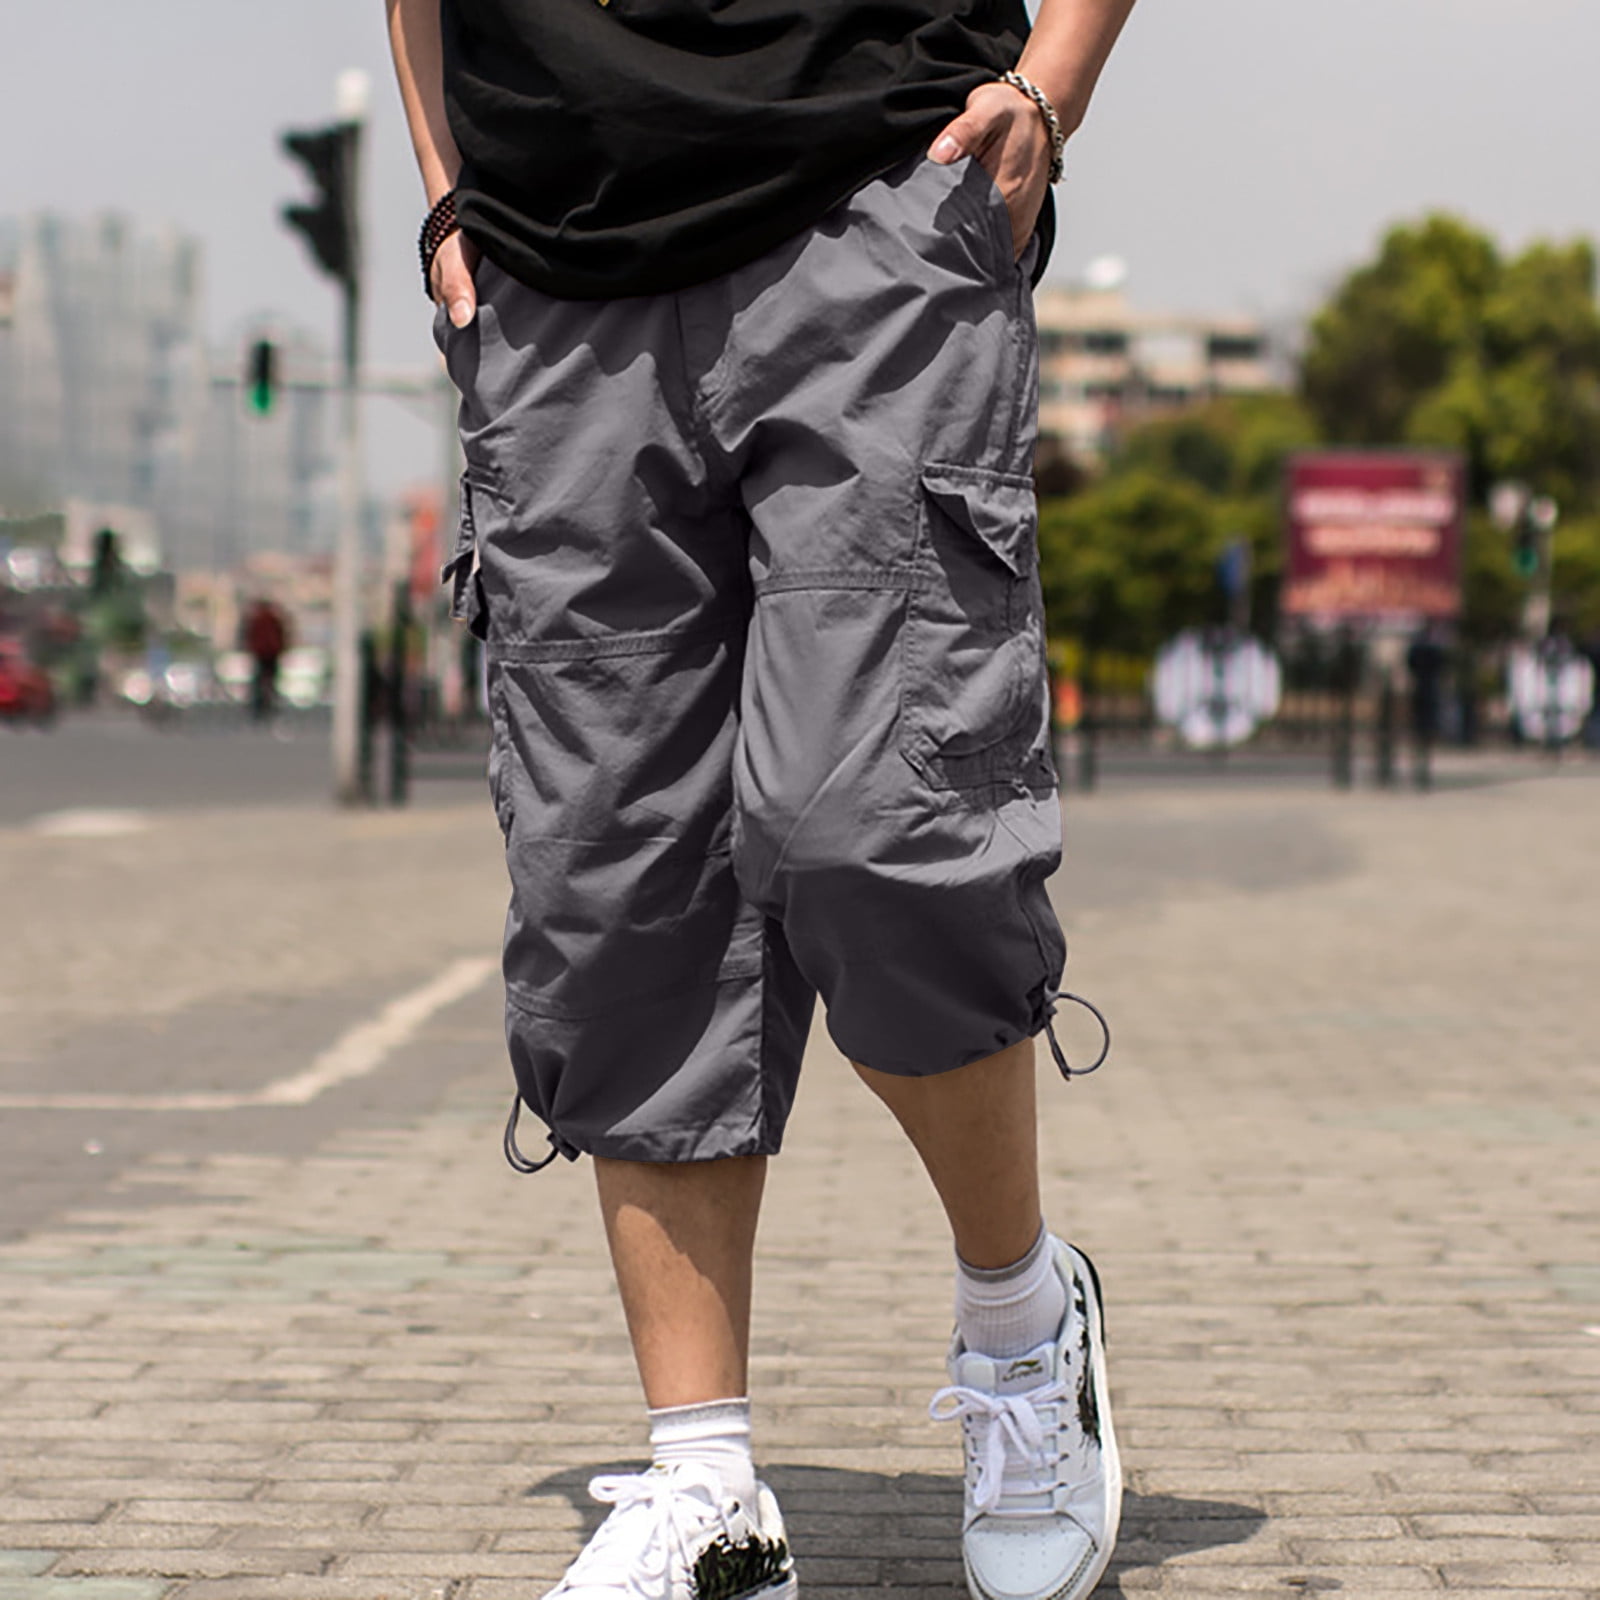 Buy Black Waterproof Cargo Shorts For Men Online In India